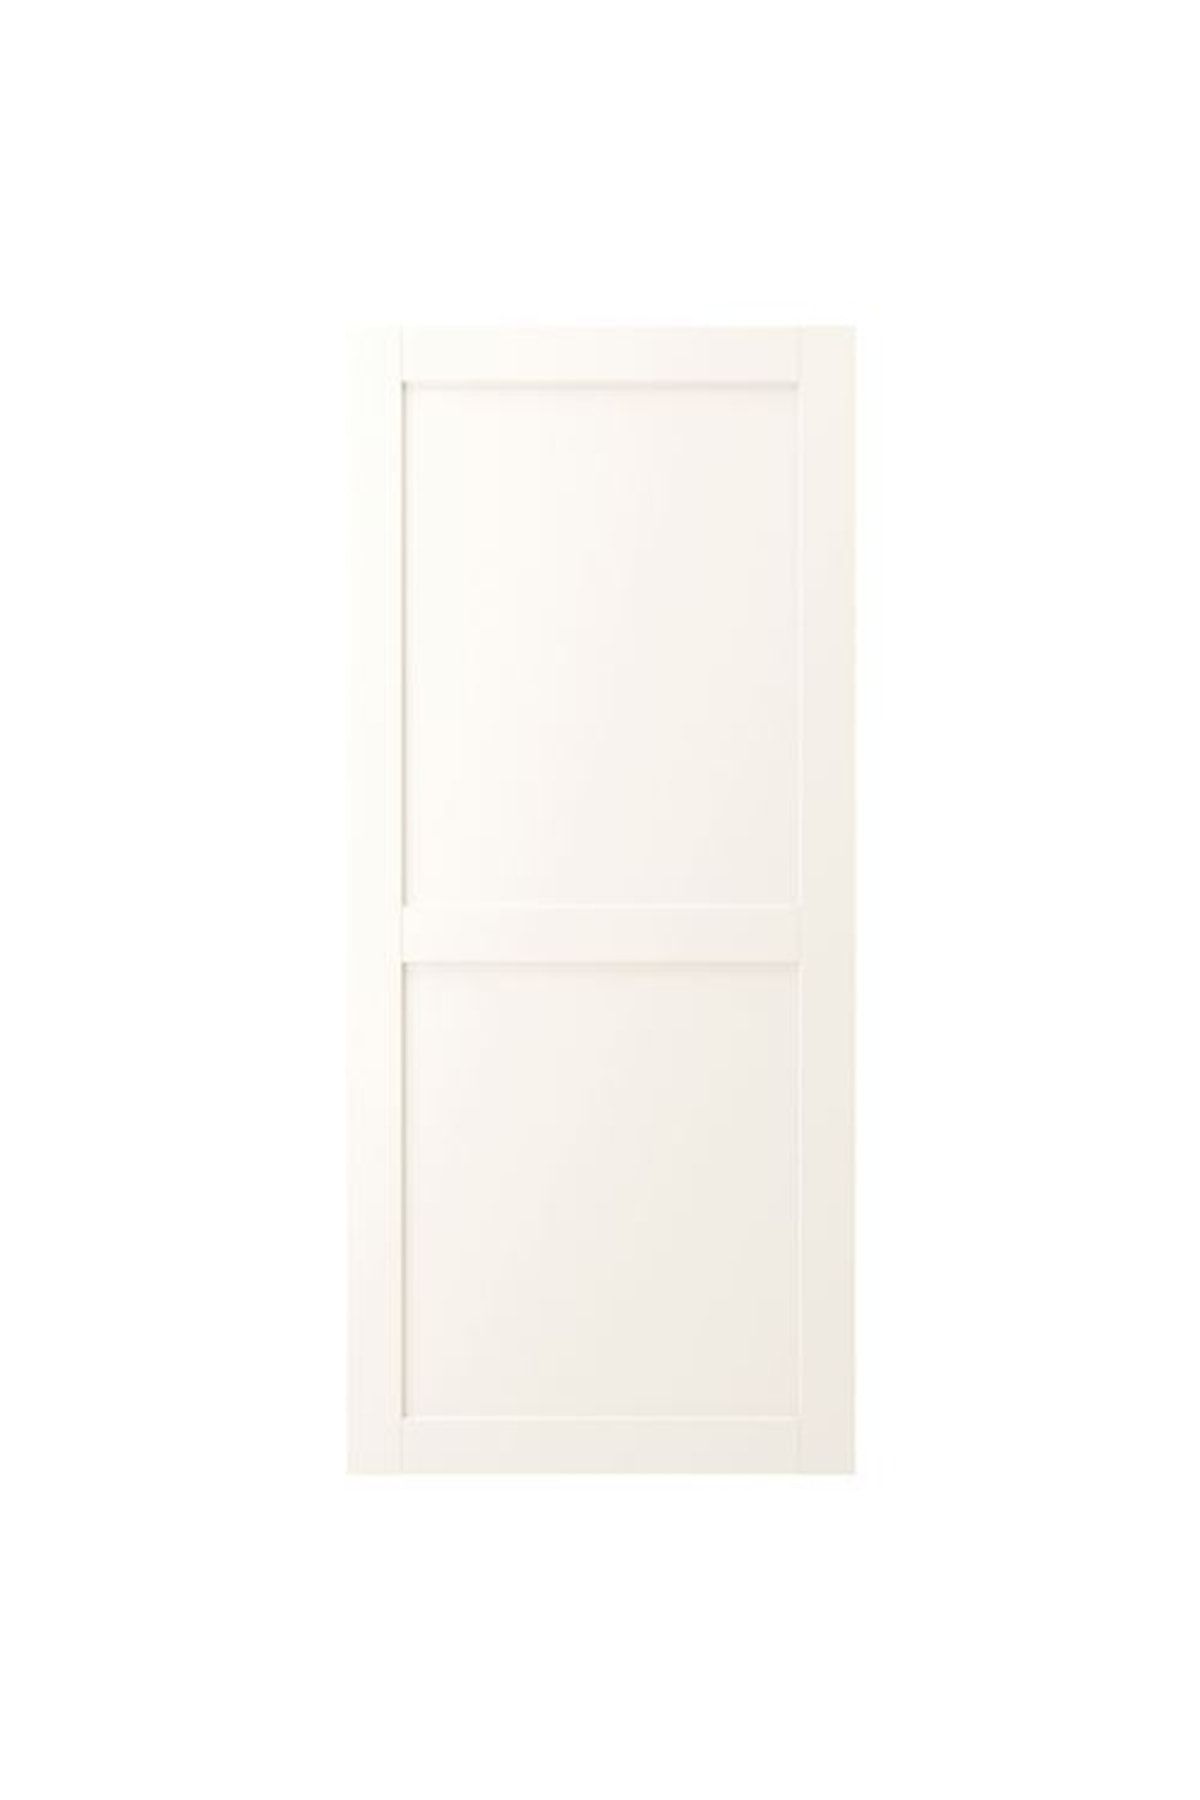 IKEA Enhet, Kapak, 60x135 Cm, Beyaz